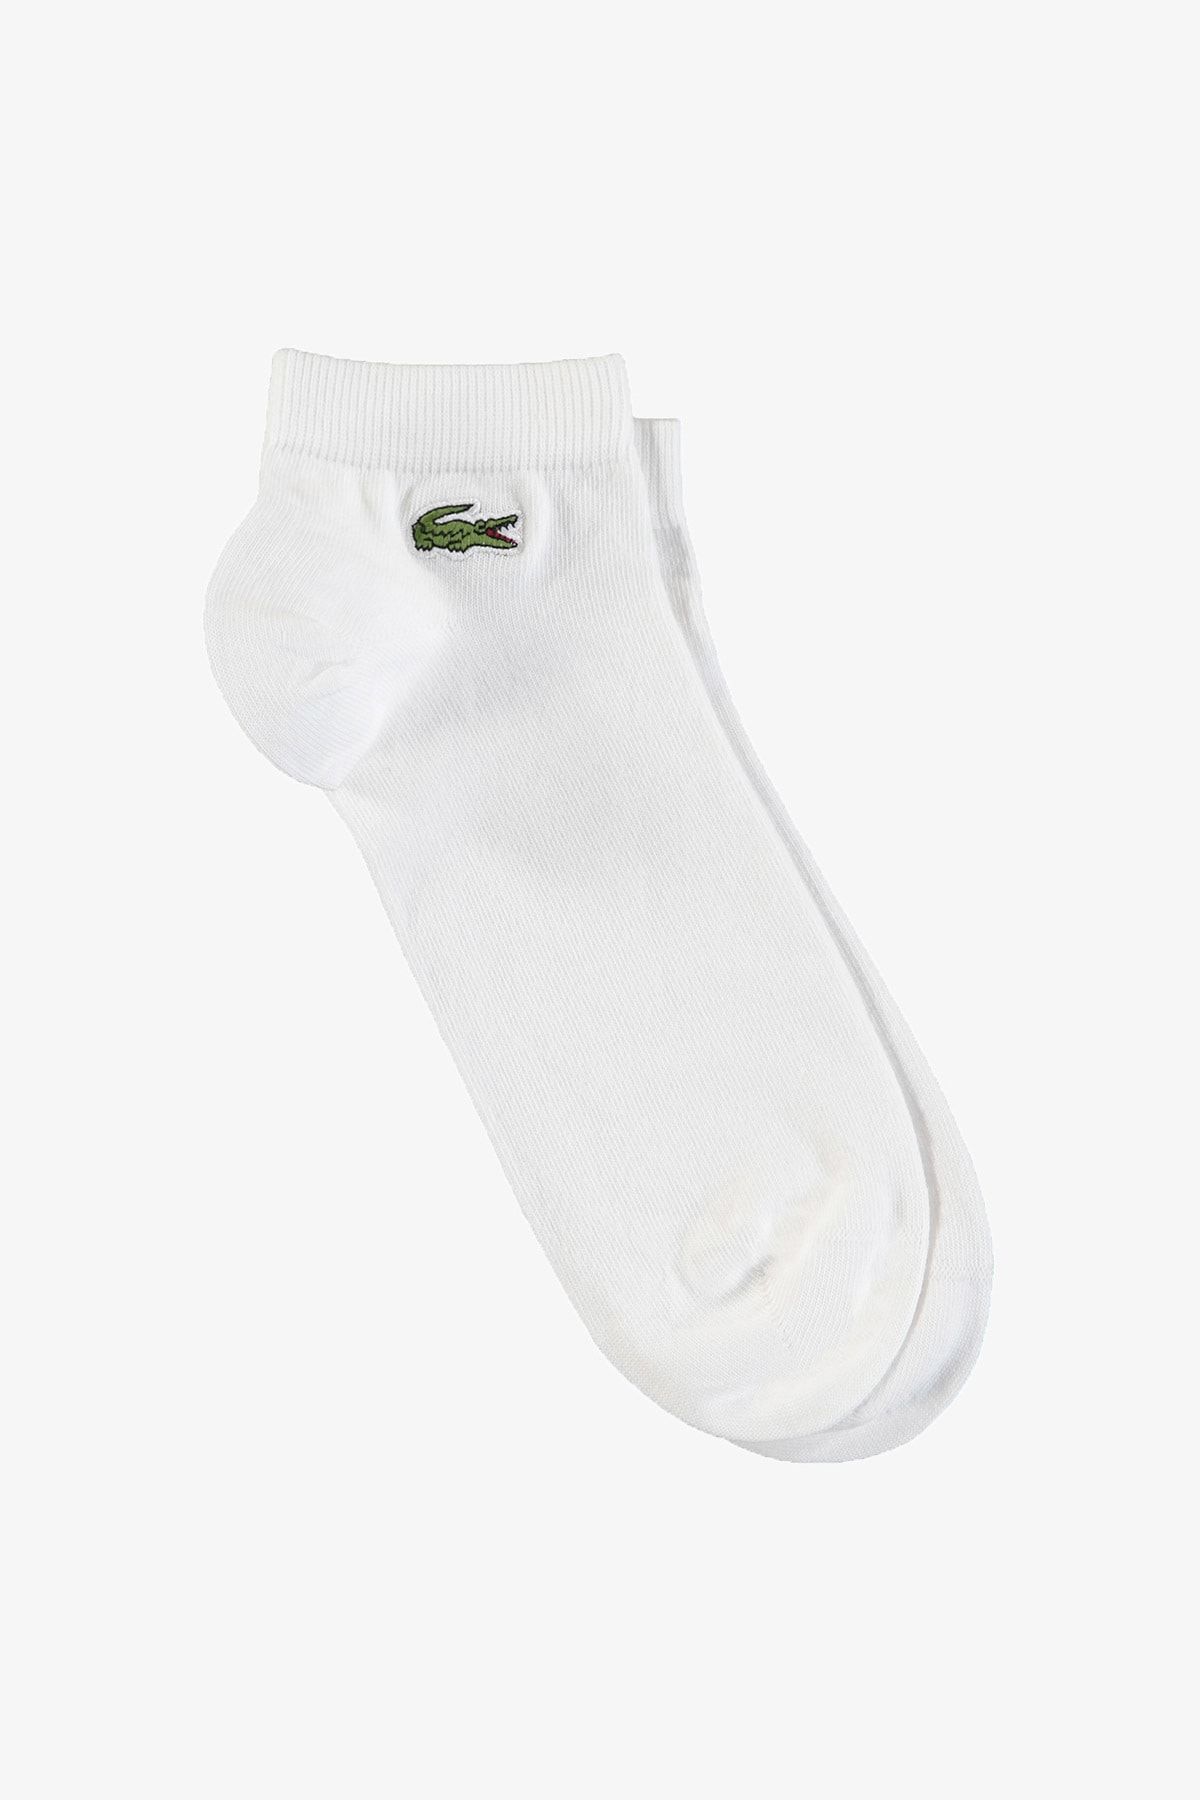 Lacoste Sport Unisex Kısa Beyaz 3'lü Çorap